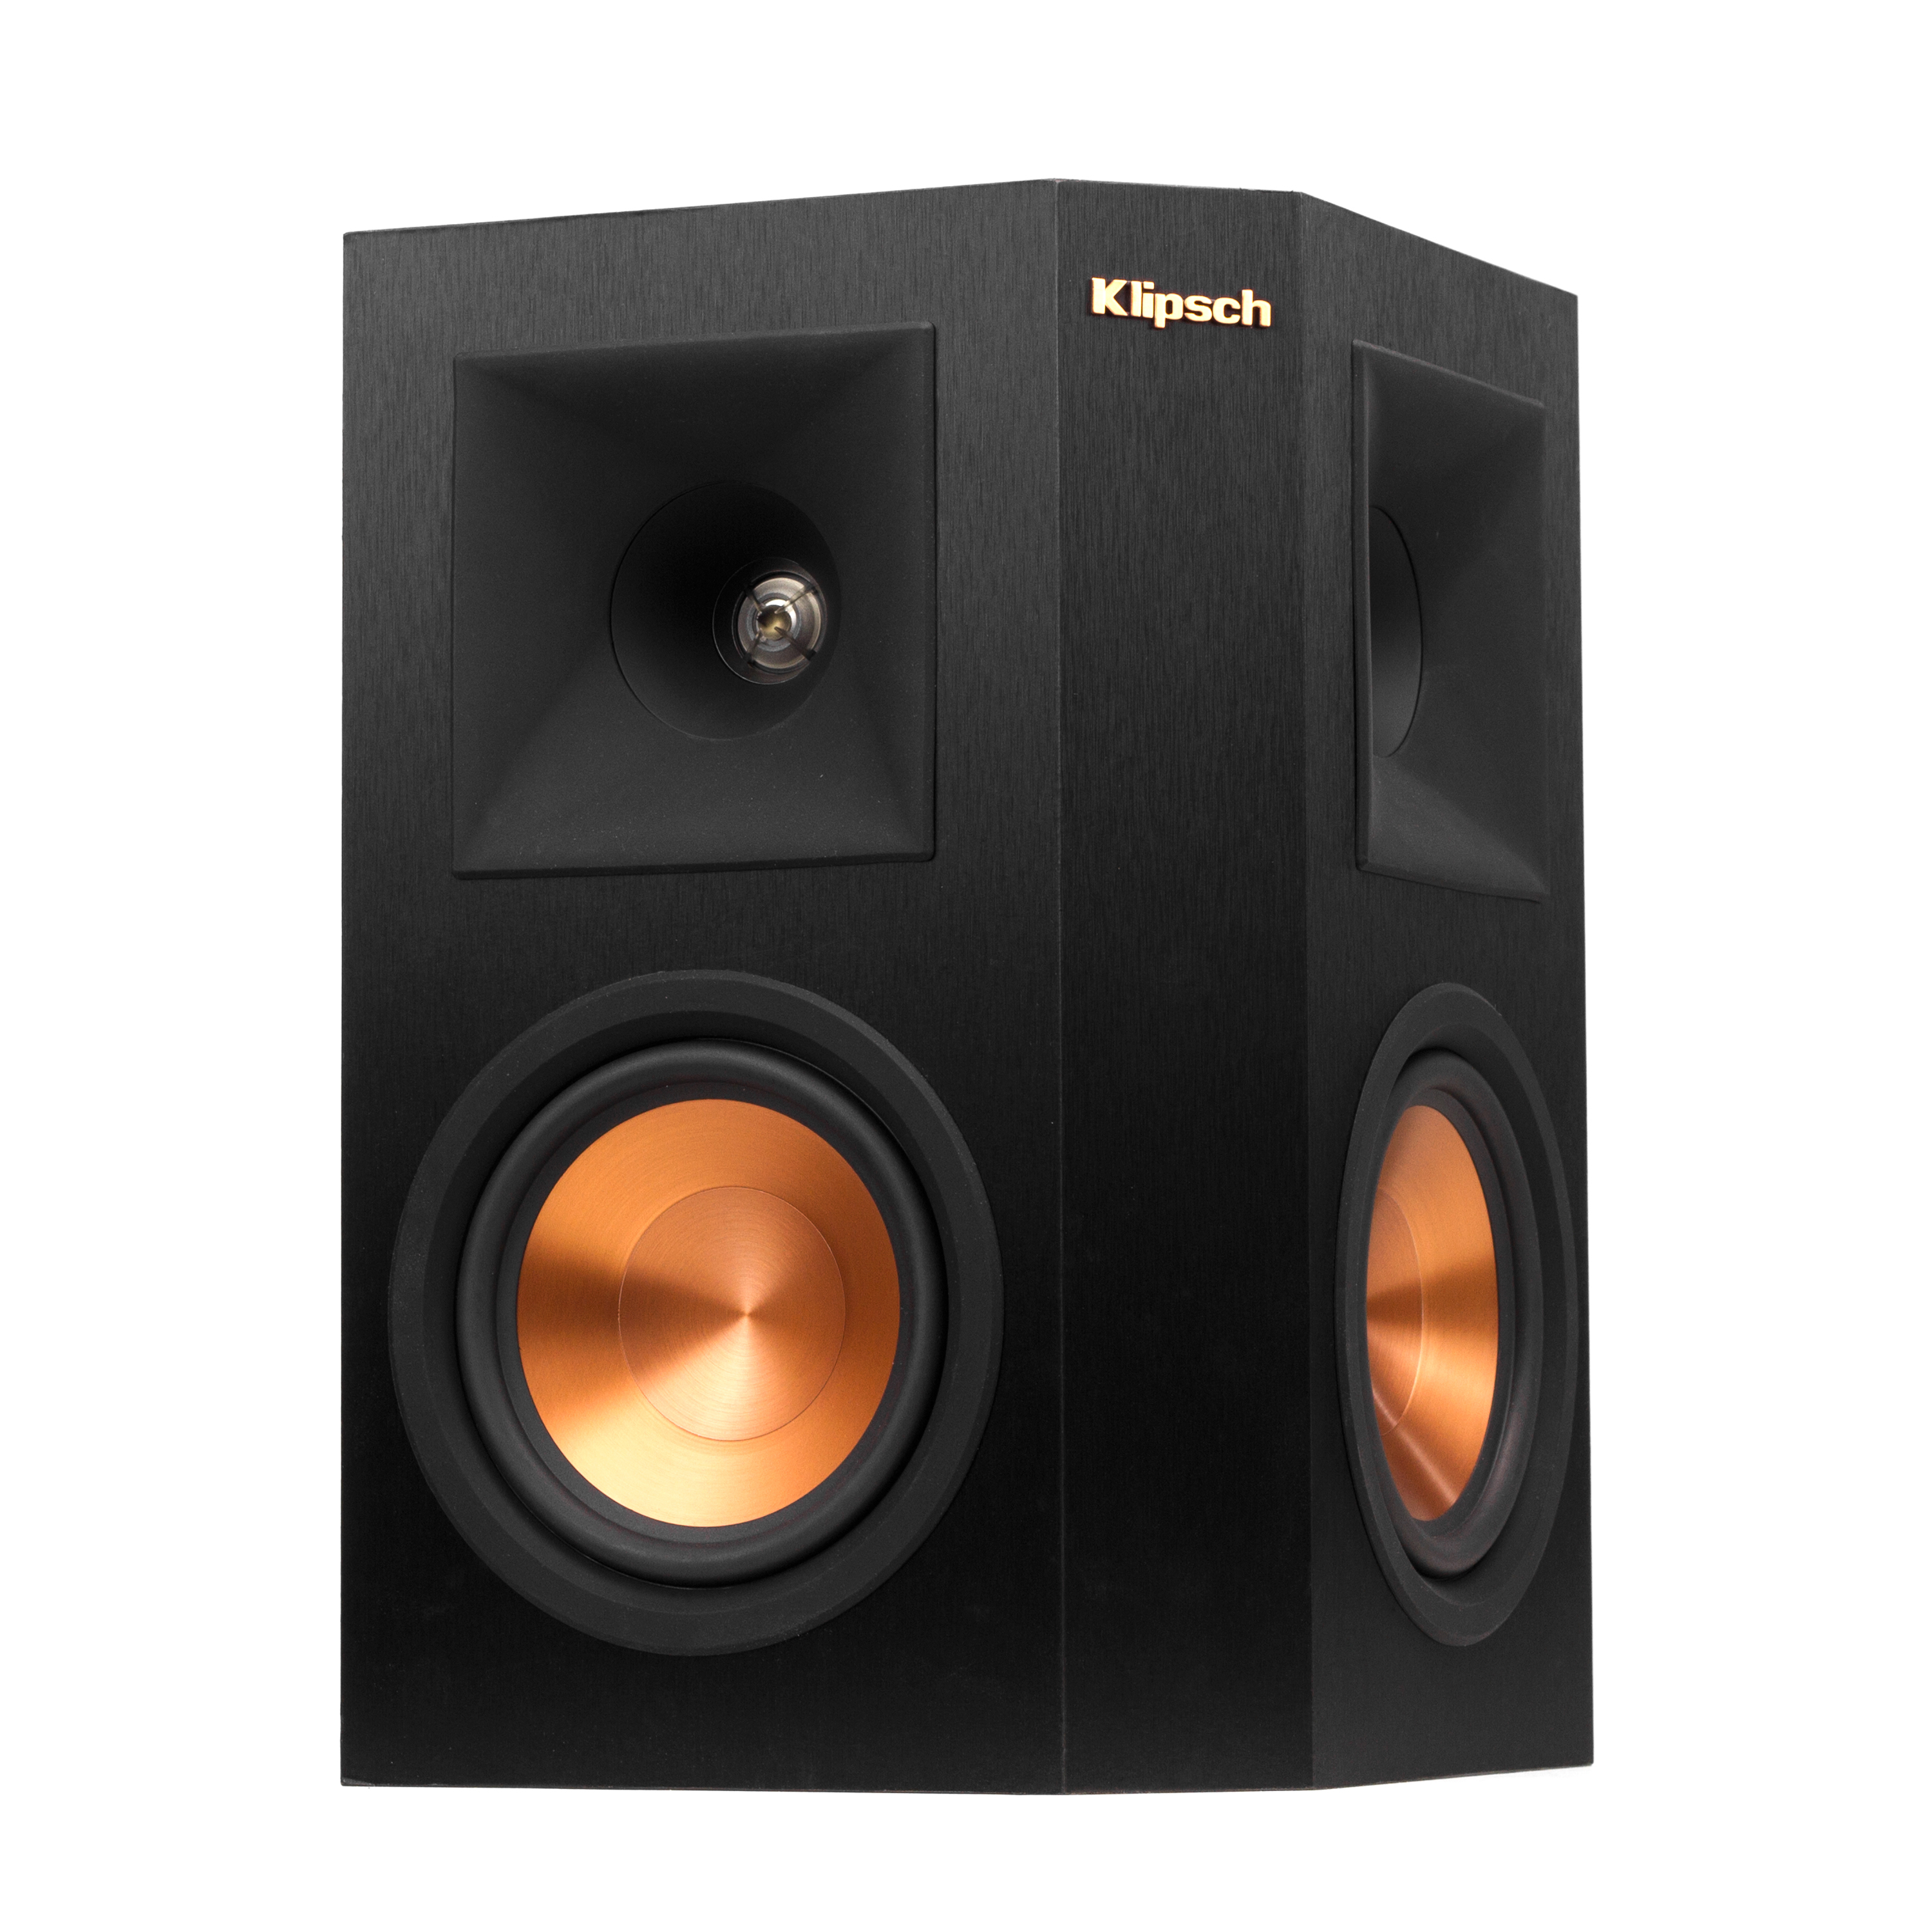 Klipsch Surround Sound Speakers | Klipsch